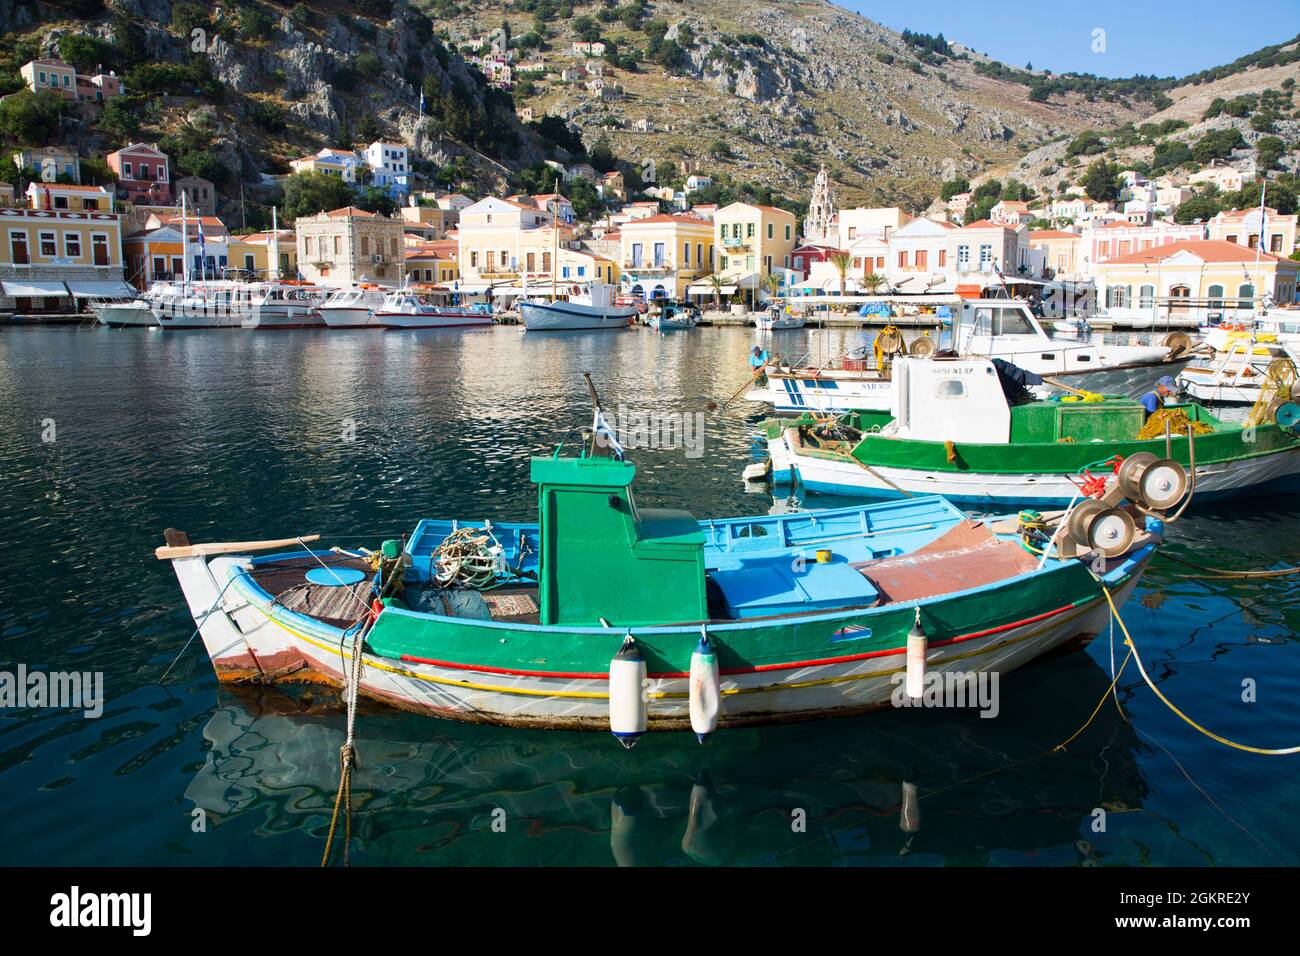 Bateau de pêche, port de Gialos, île Symi (Simi), groupe des îles Dodécanèse, îles grecques, Grèce, Europe Banque D'Images